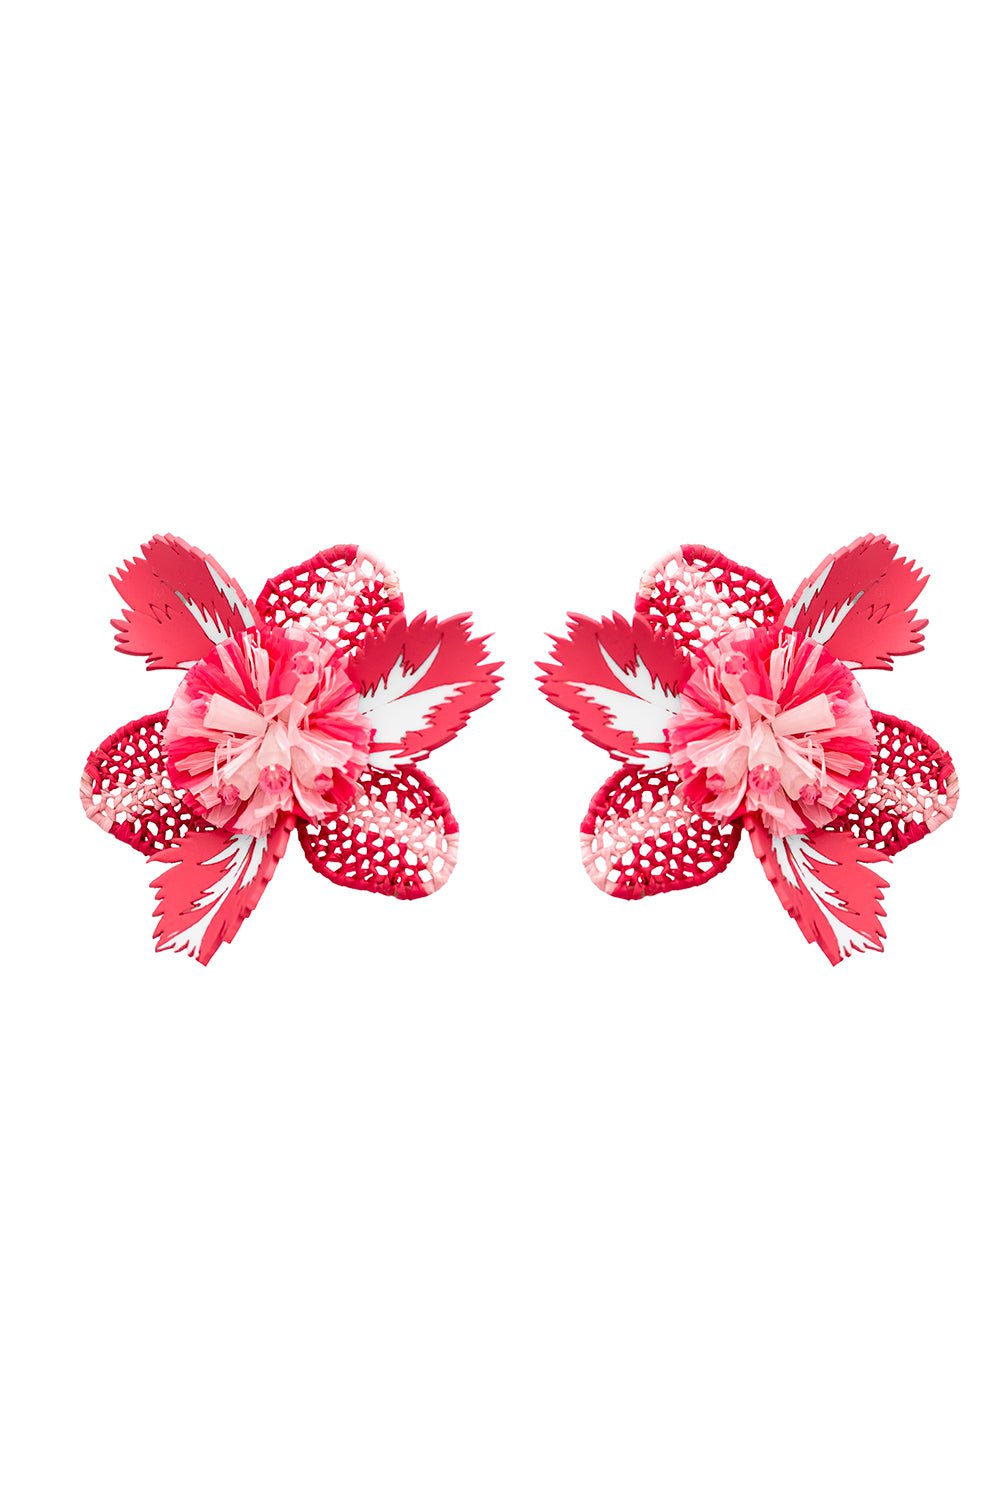 OSCAR DE LA RENTA-Large Tropical Flower Earrings-PINK